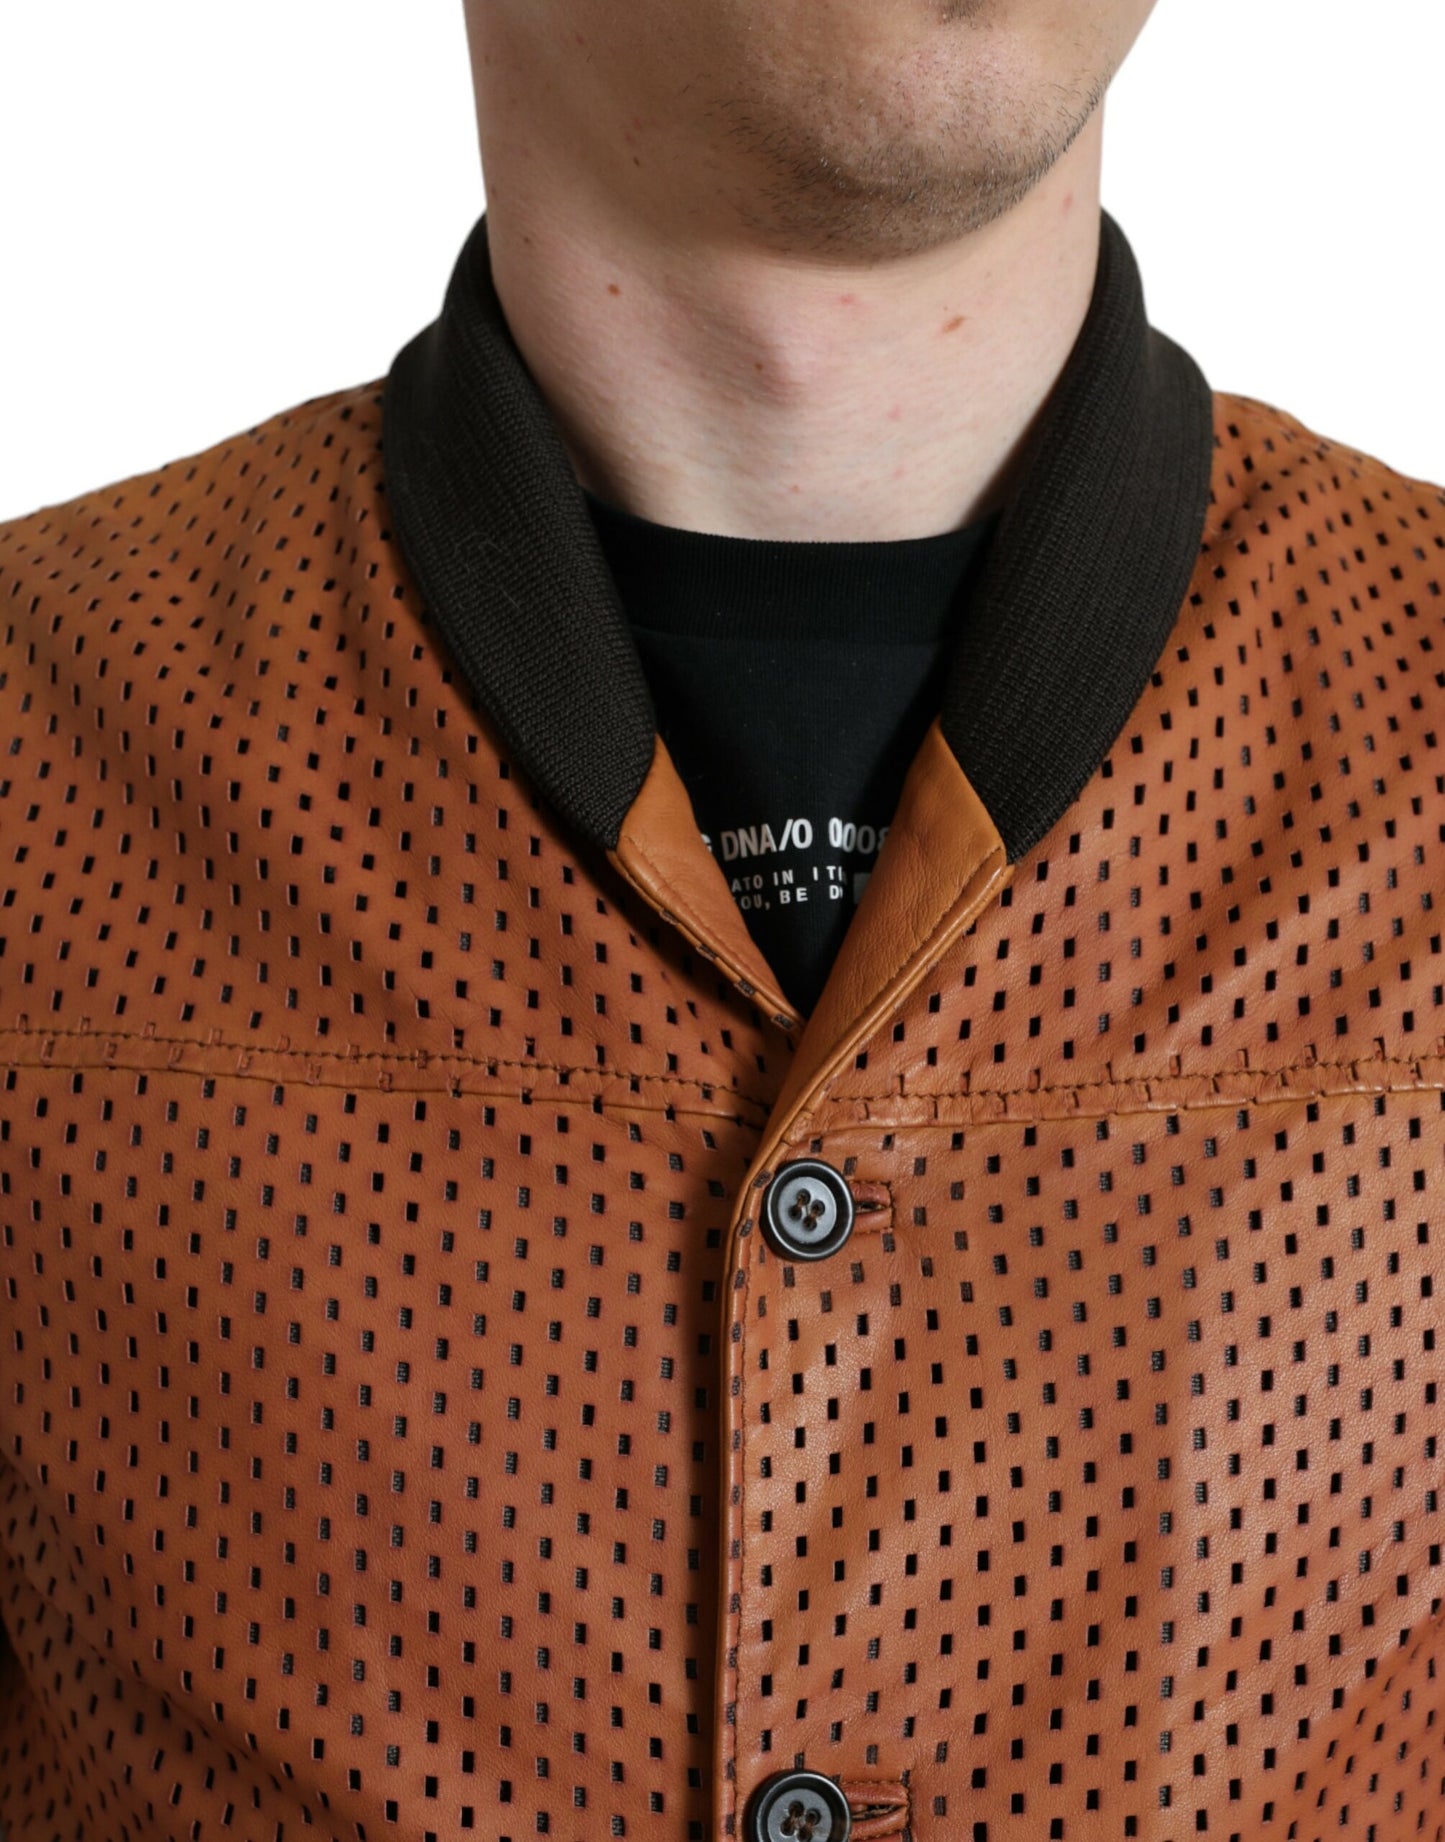 Dolce & Gabbana Elegant Leather Perforated Bomber Jacket